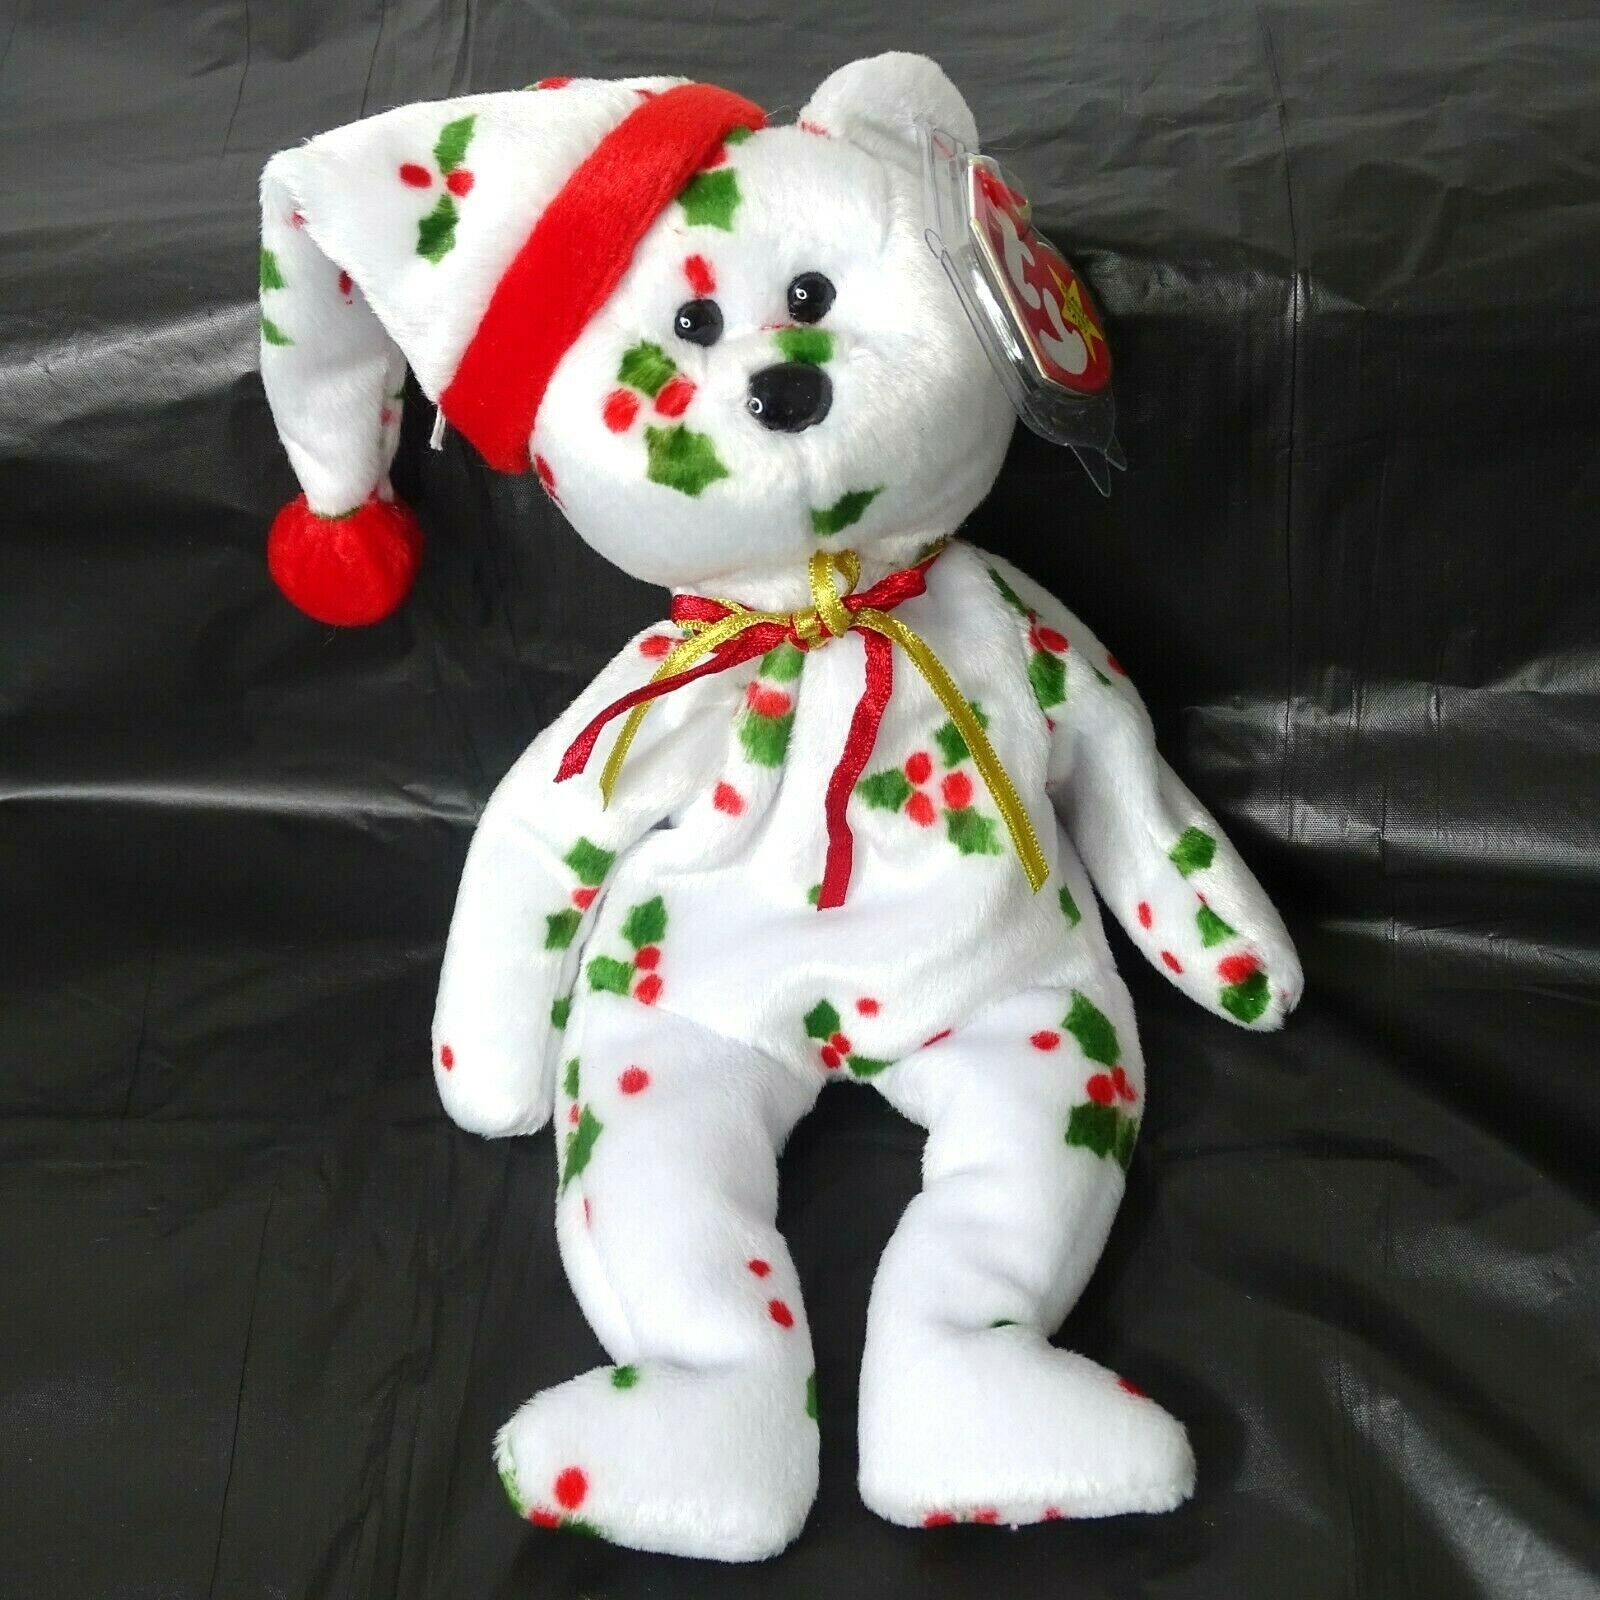 1998 holiday bear beanie baby